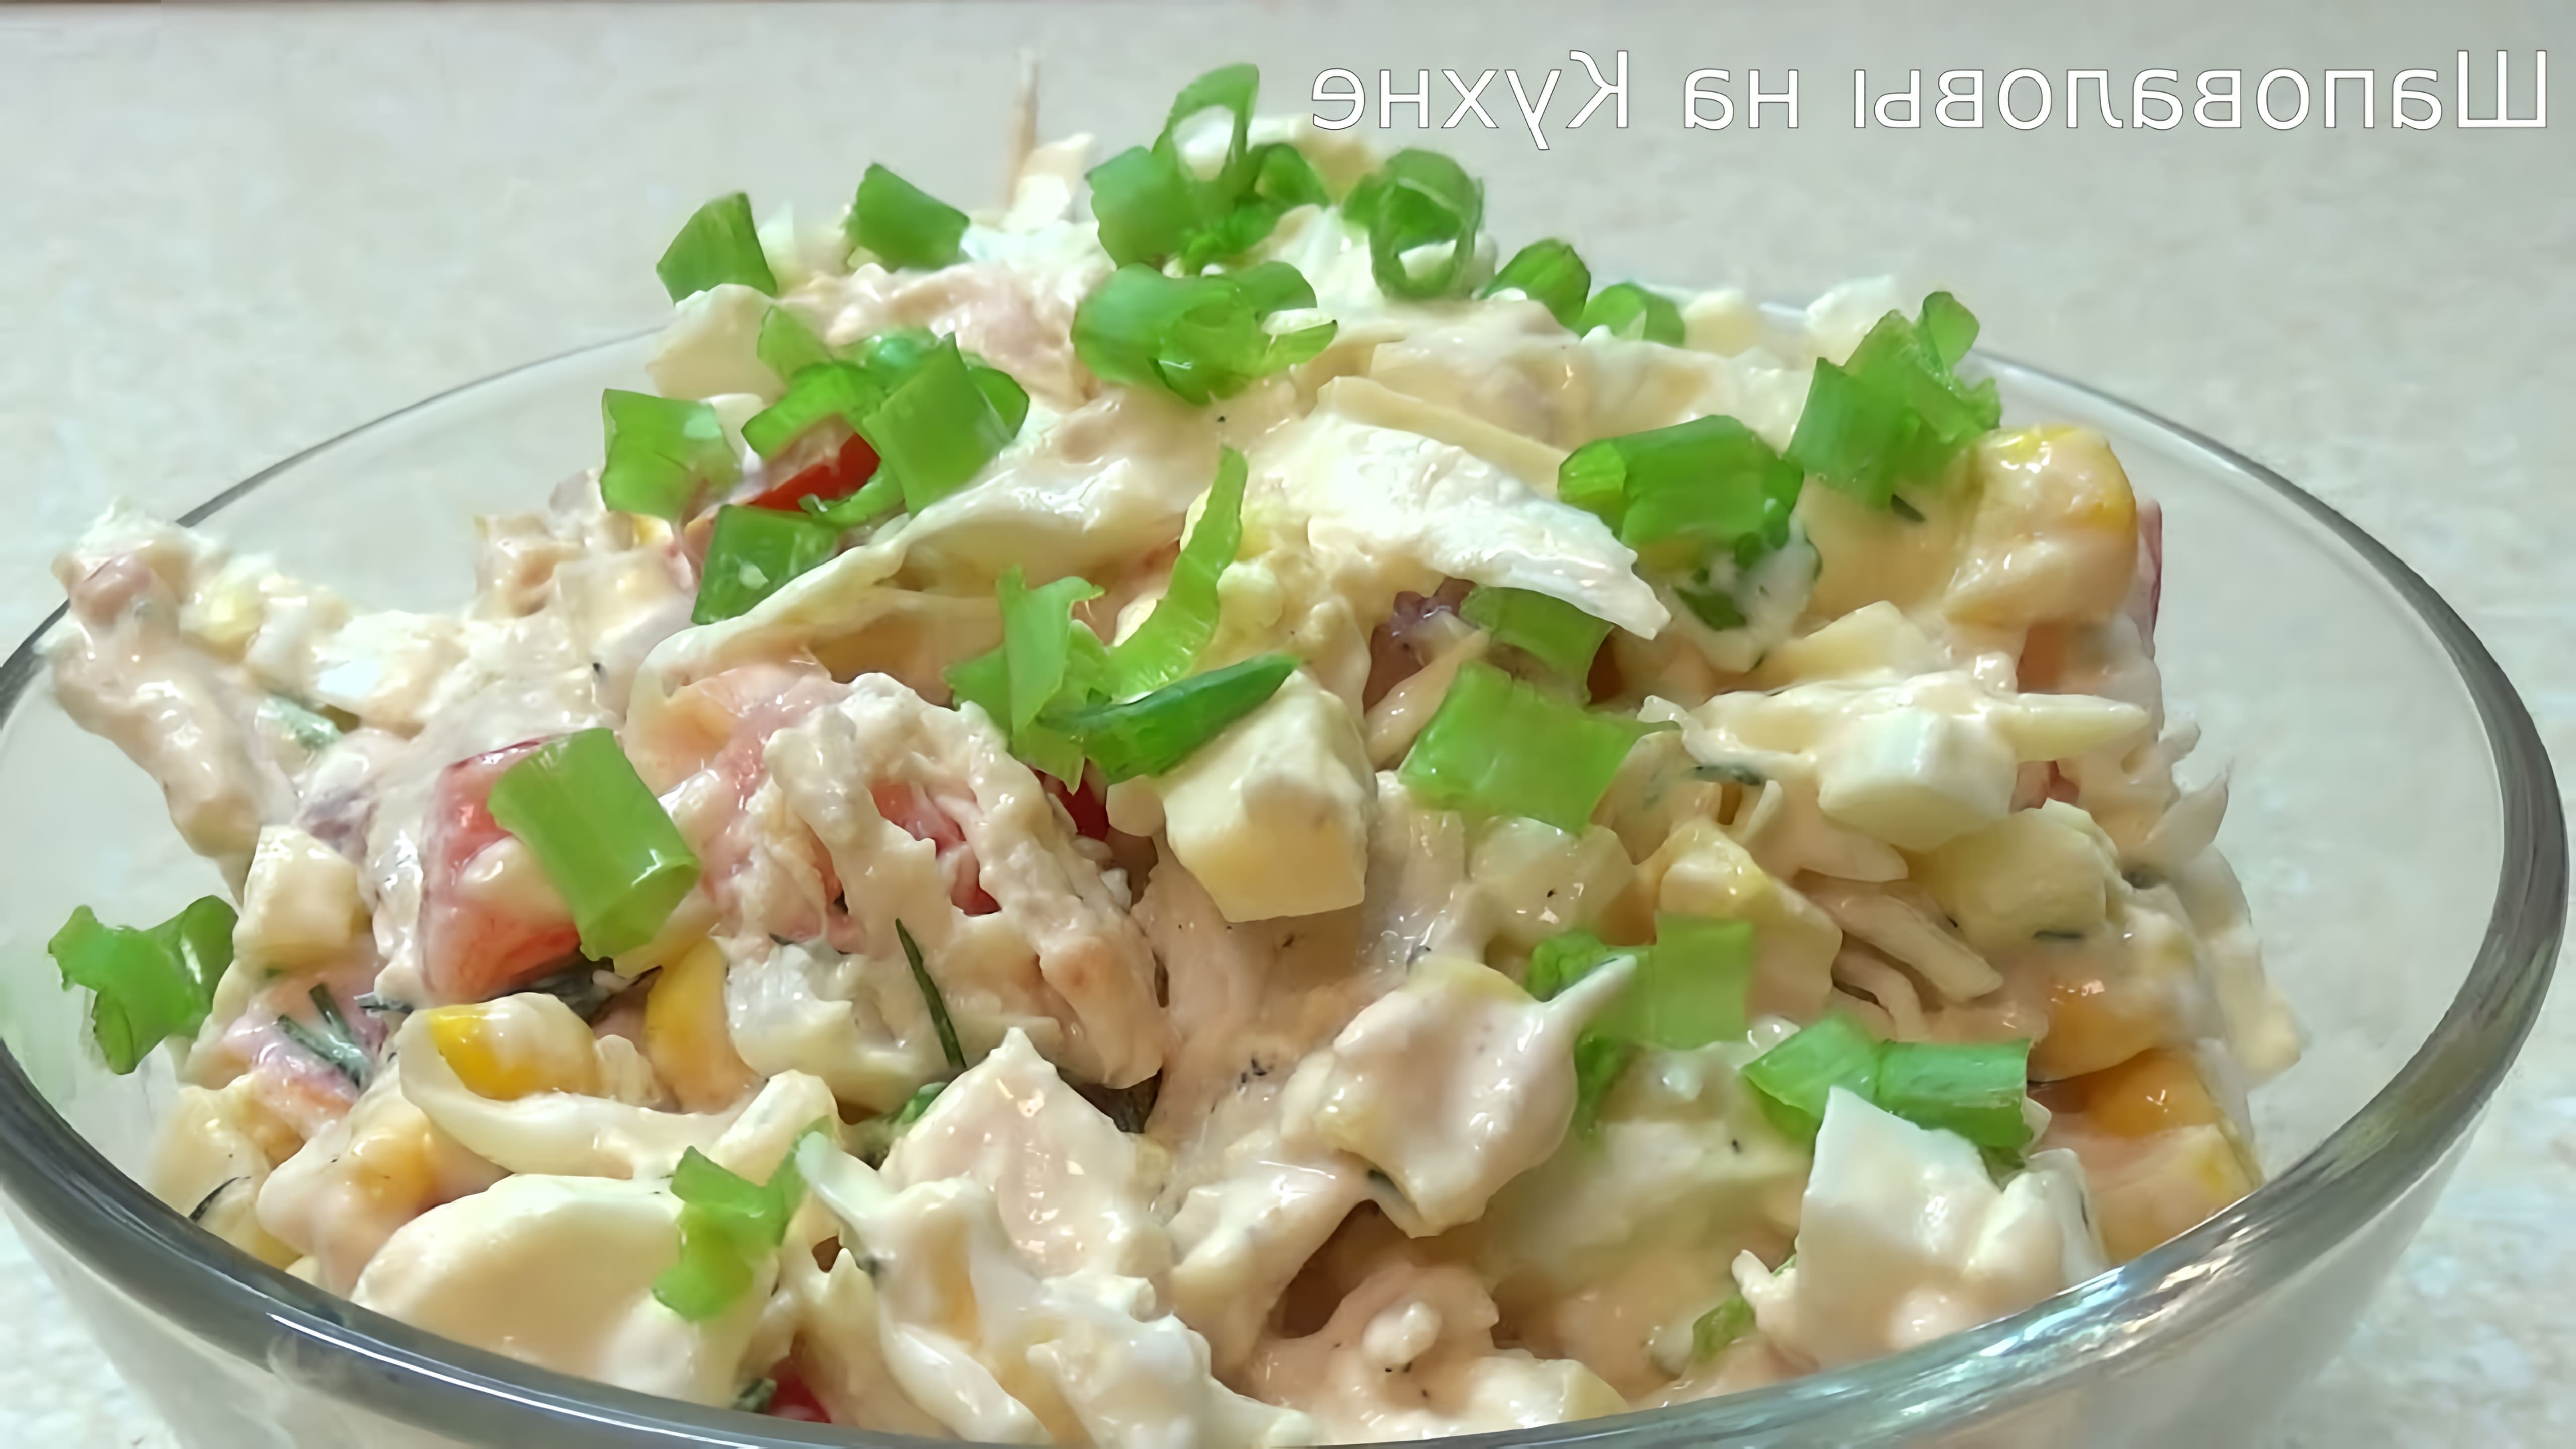 В этом видео демонстрируется рецепт легкого и вкусного салата, который можно приготовить из минимального количества ингредиентов